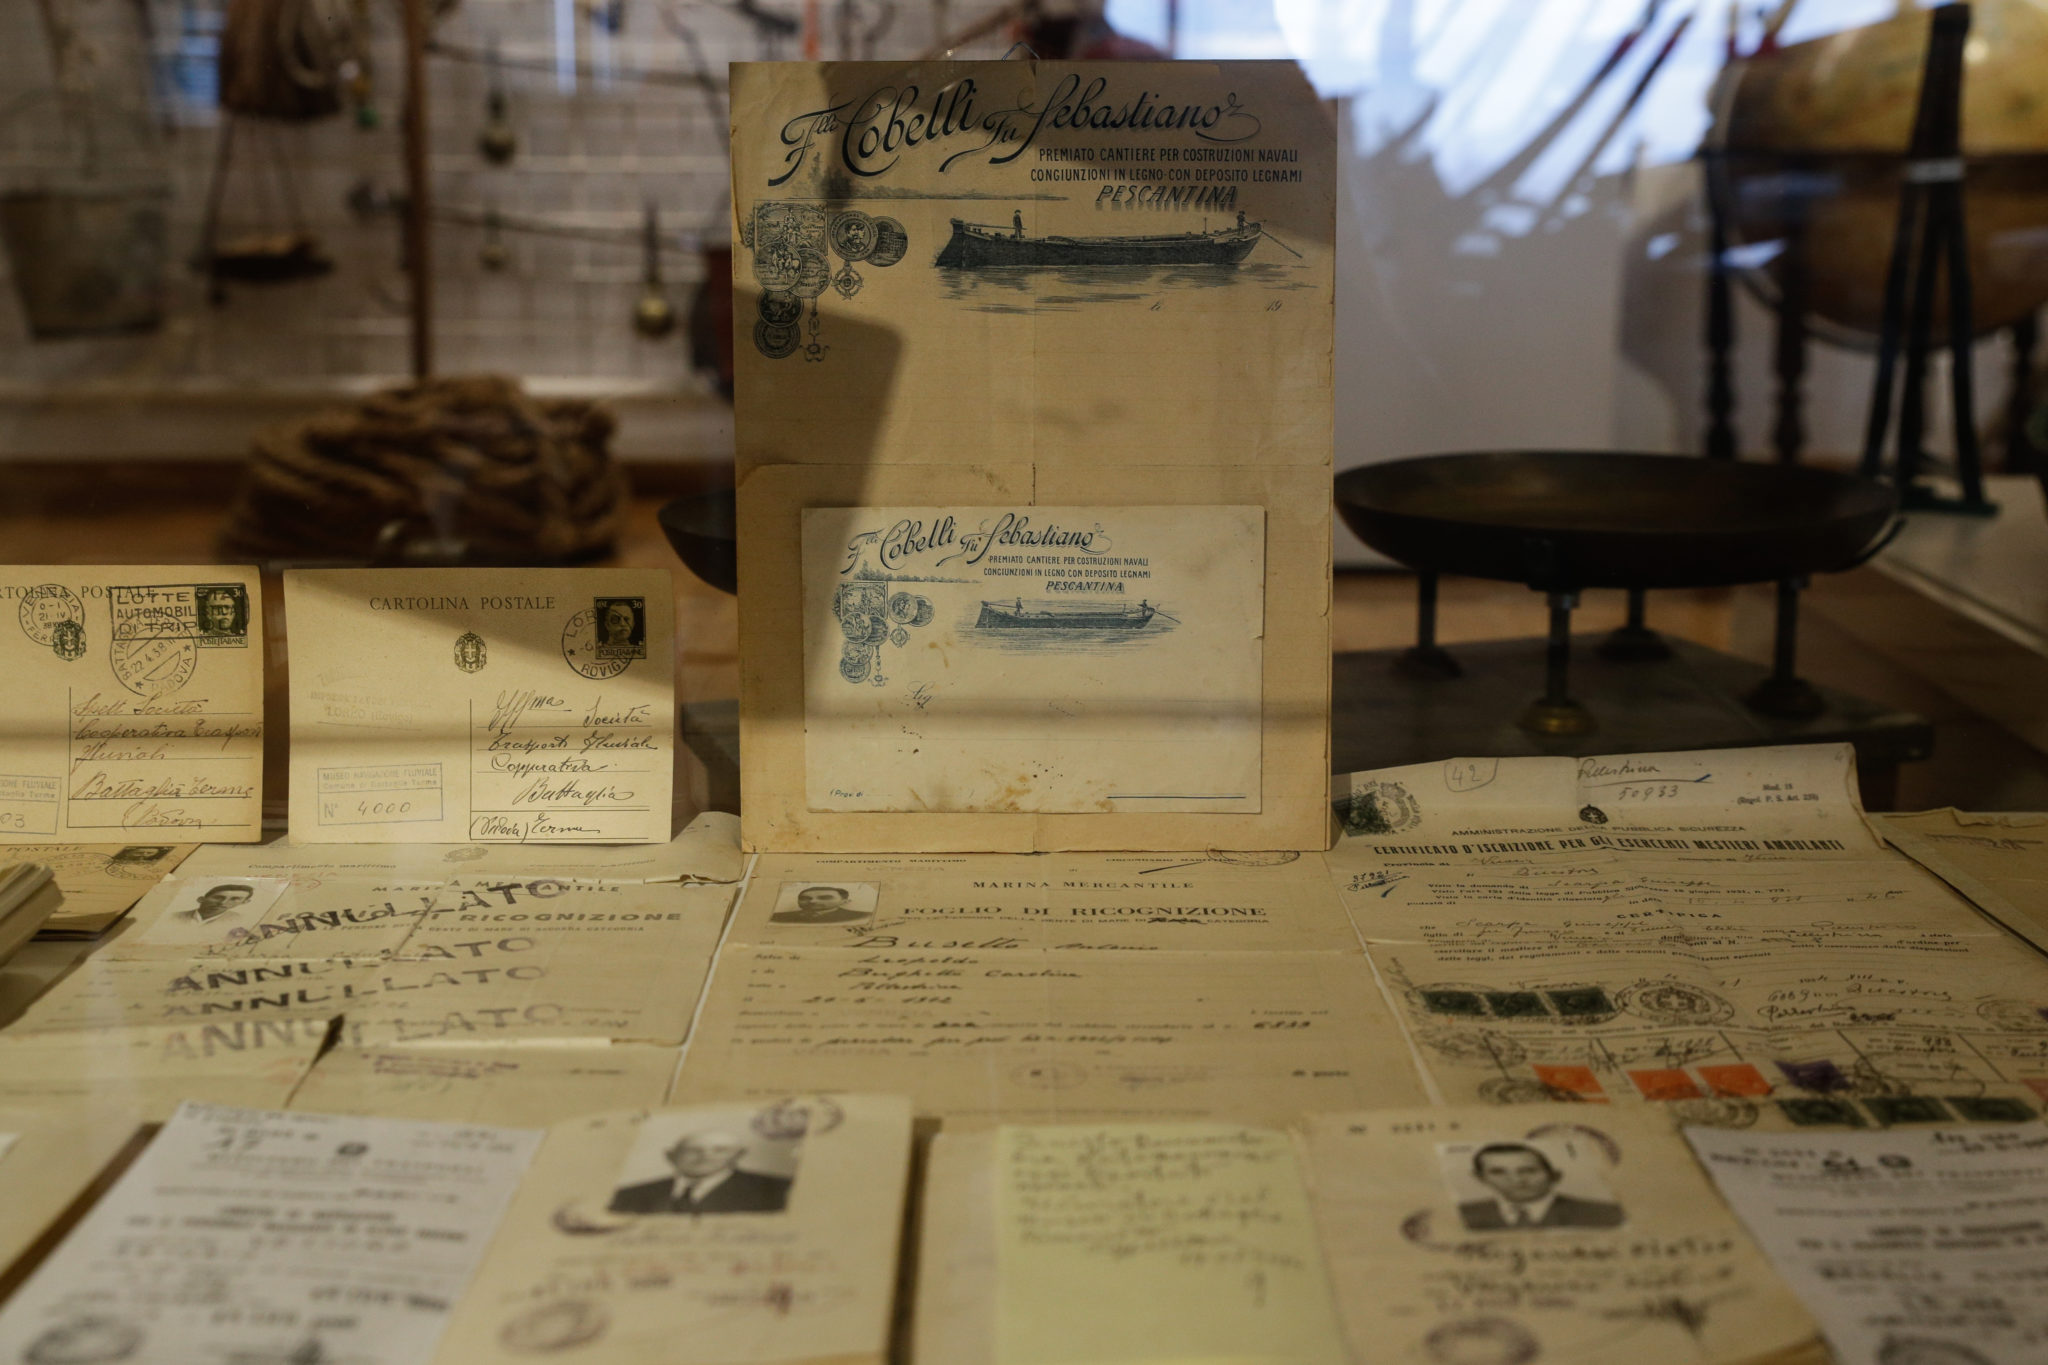 Storie, ricordi e materiali di vita vissuta dagli antichi barcaioli. Al Museo della Navigazione Fluviale di Battaglia Terme, Padova, si naviga nella memoria